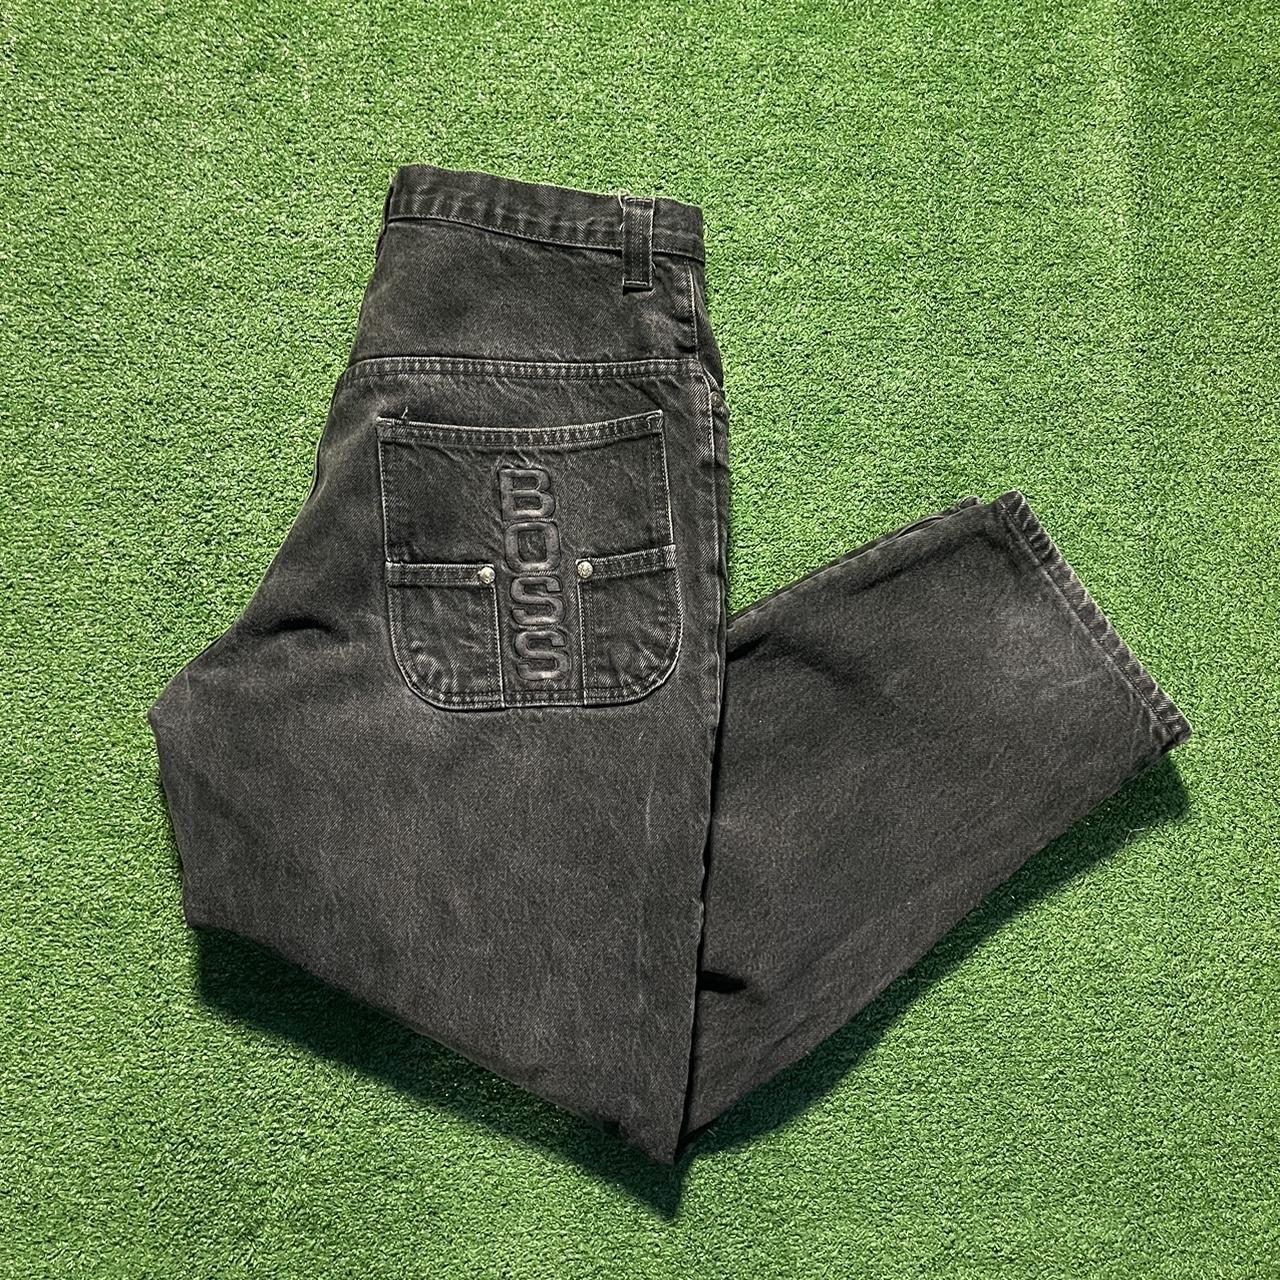 Vintage BOSS baggy jeans. Back pocket hit Size: - Depop